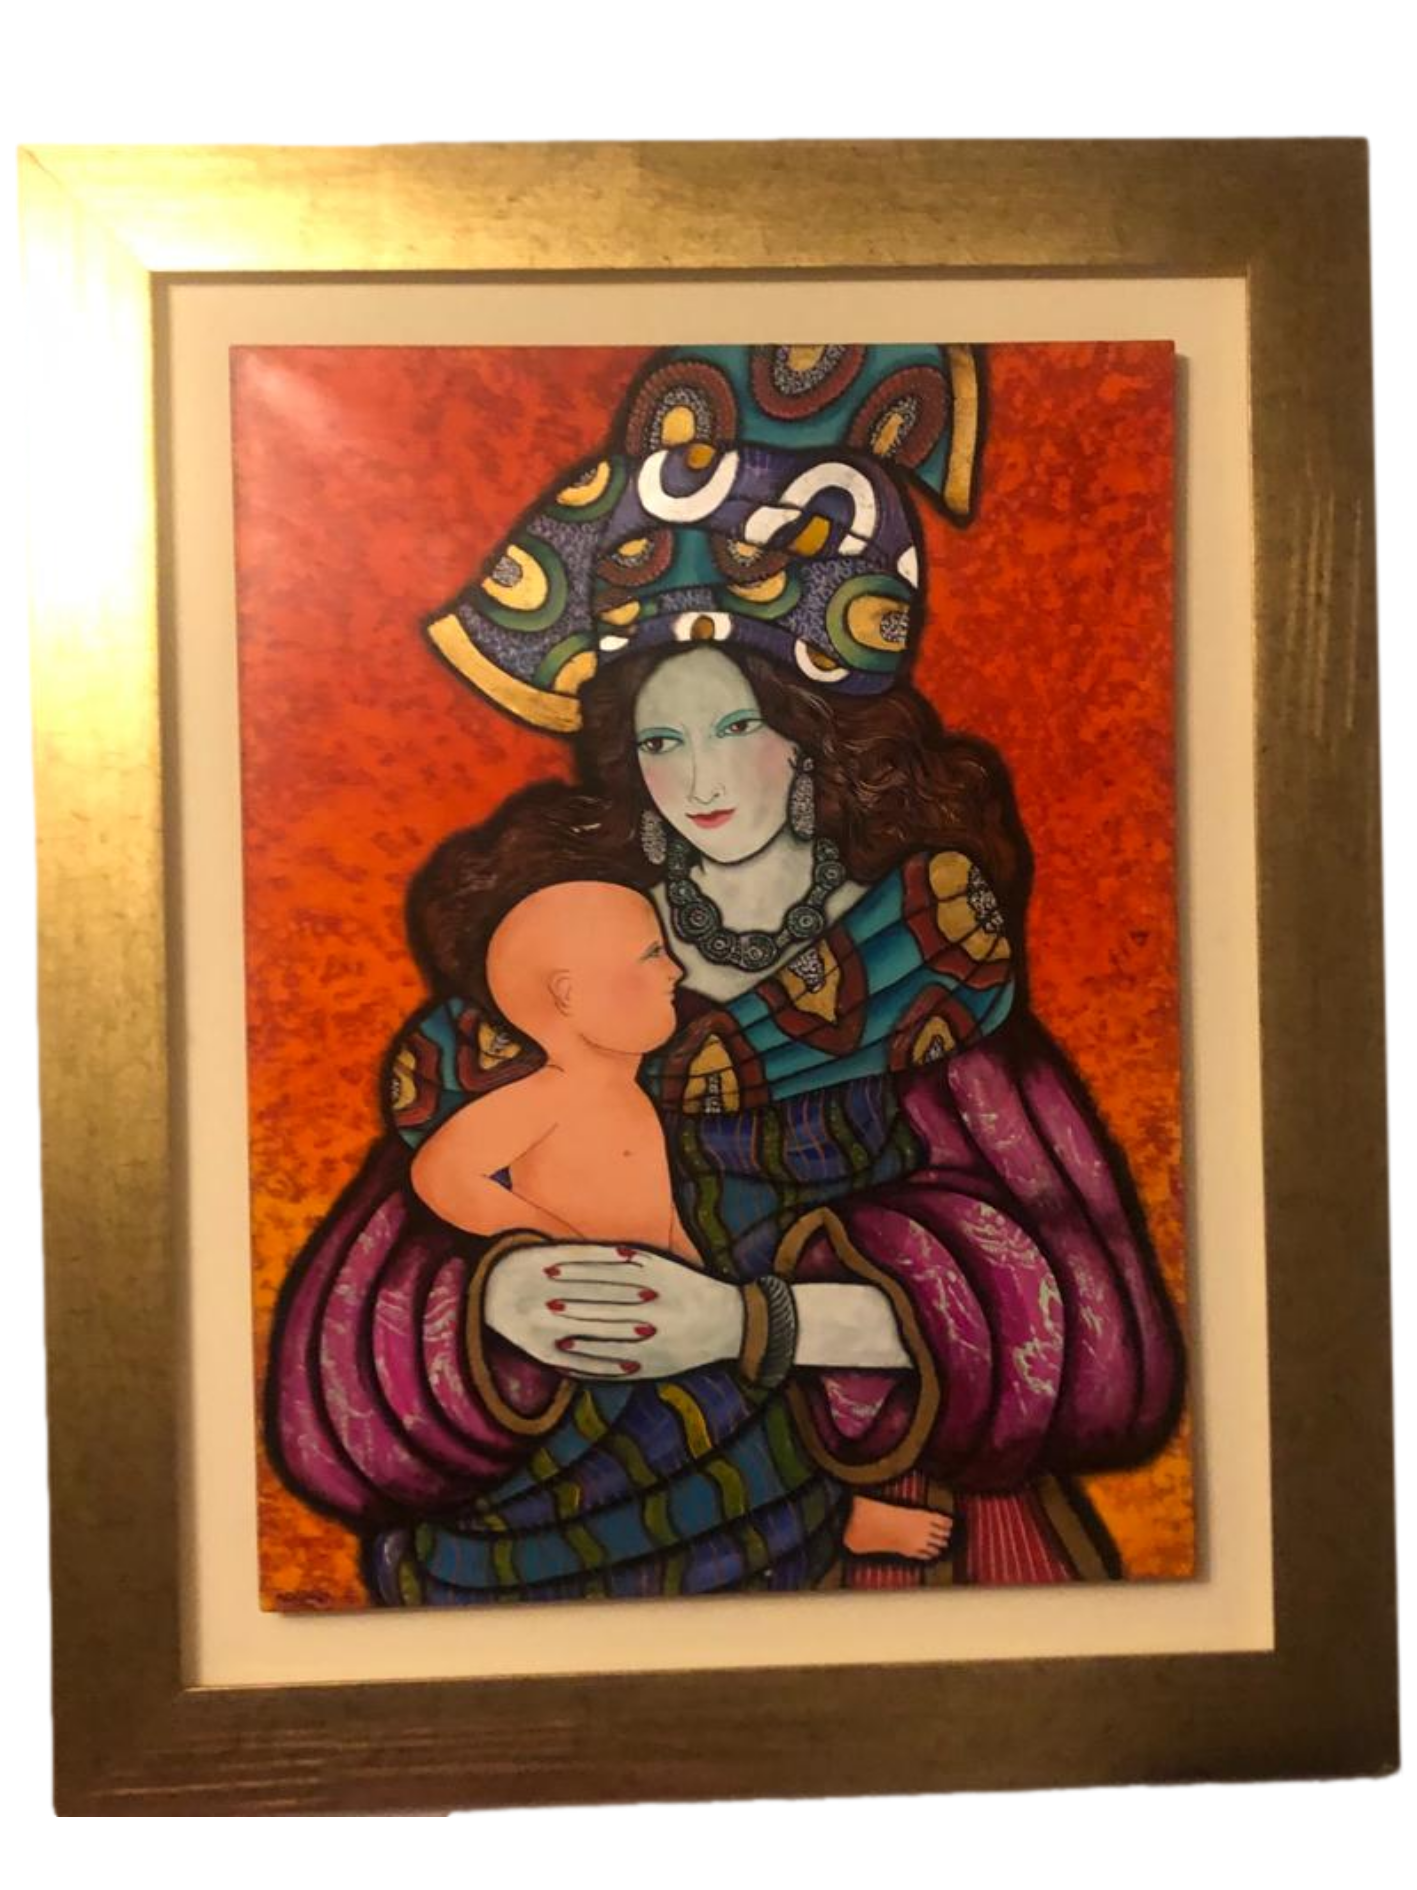 Cuadro "Maternidad" de Migliorisi 60 x 80 cm